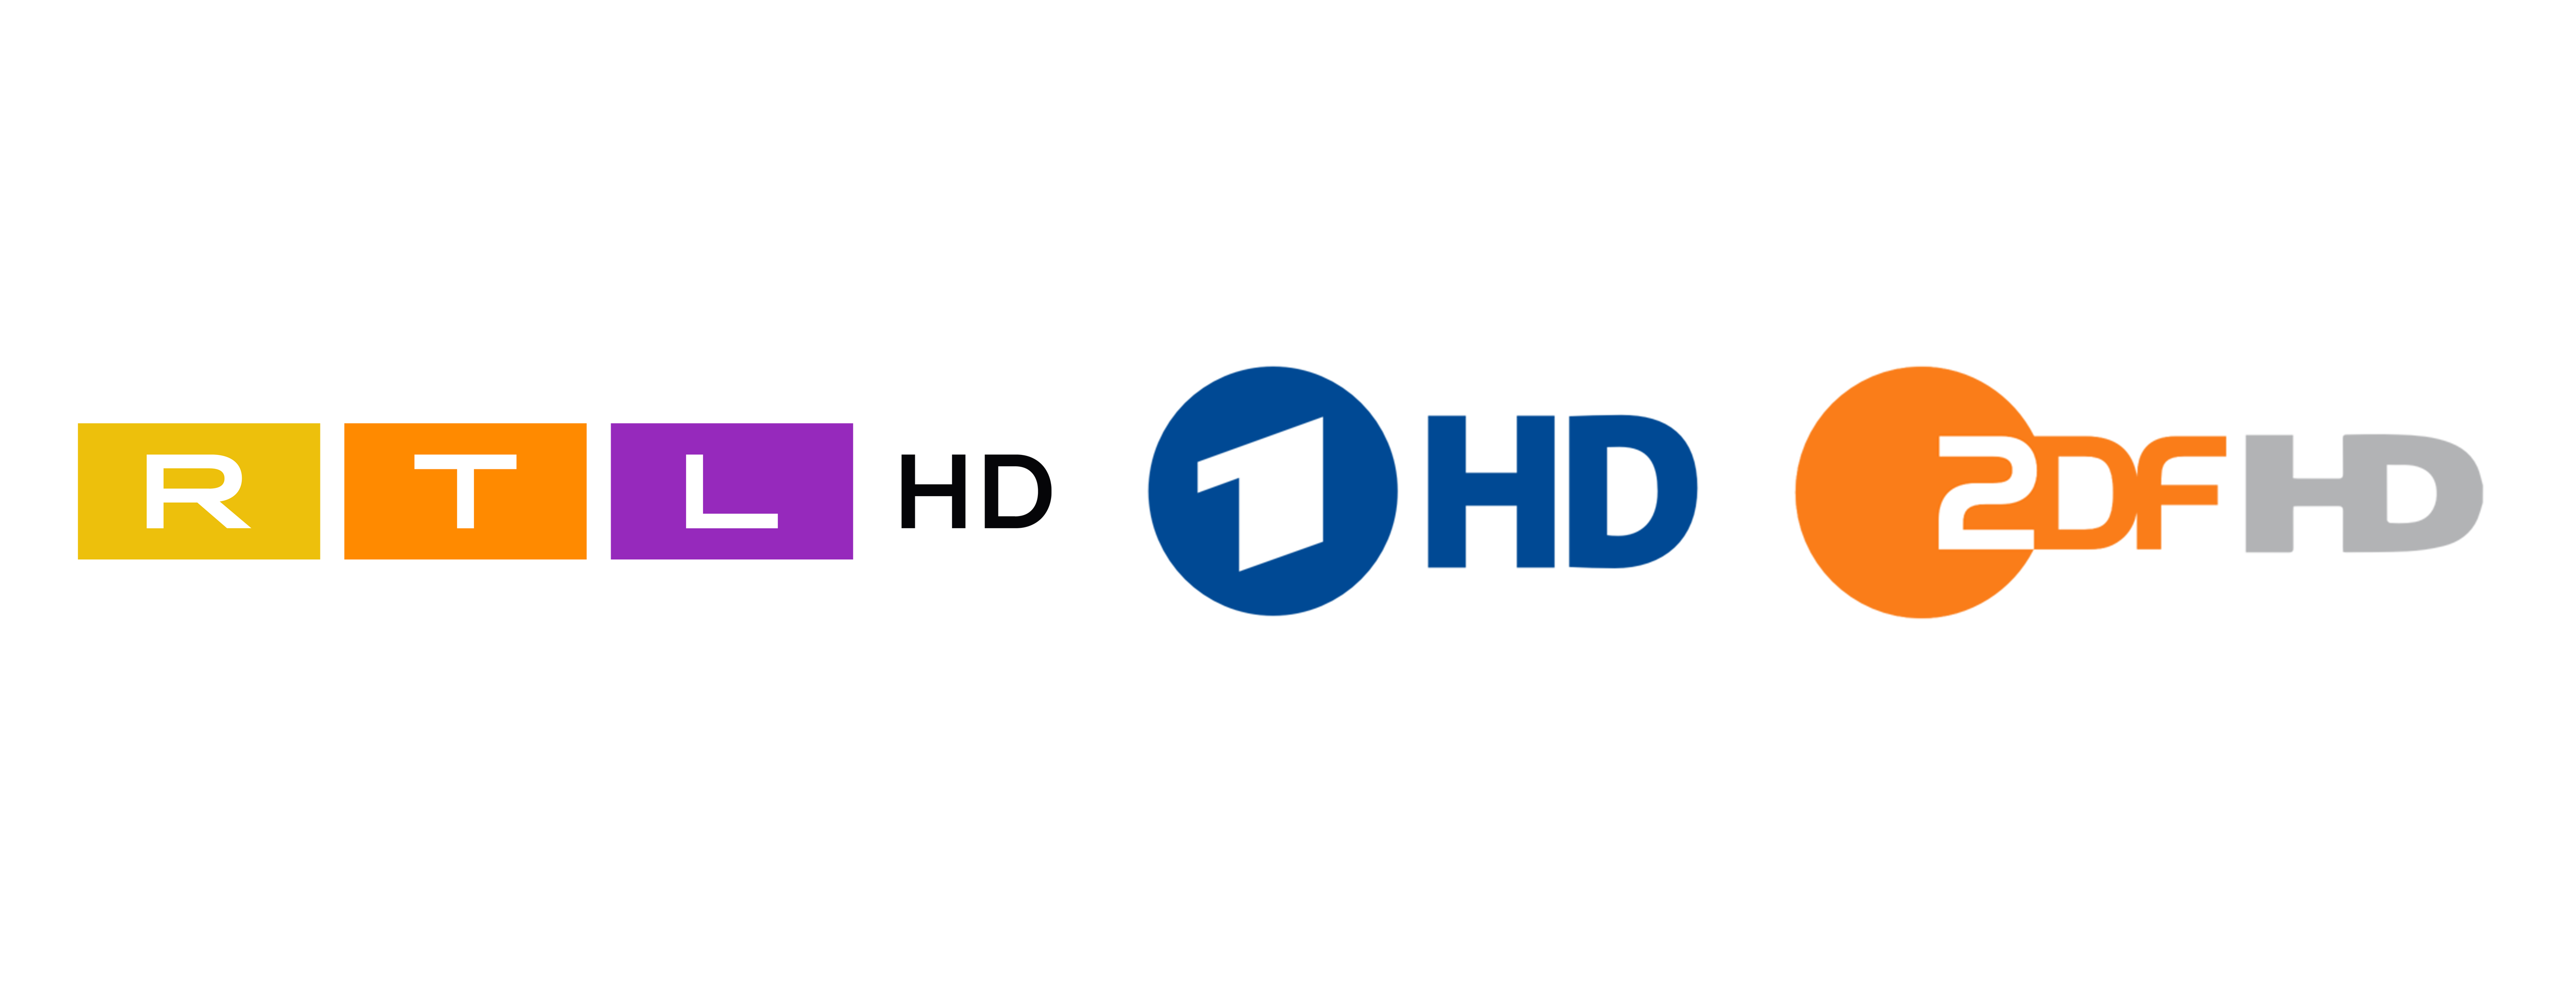 RTL, ARD, ZDF Logos